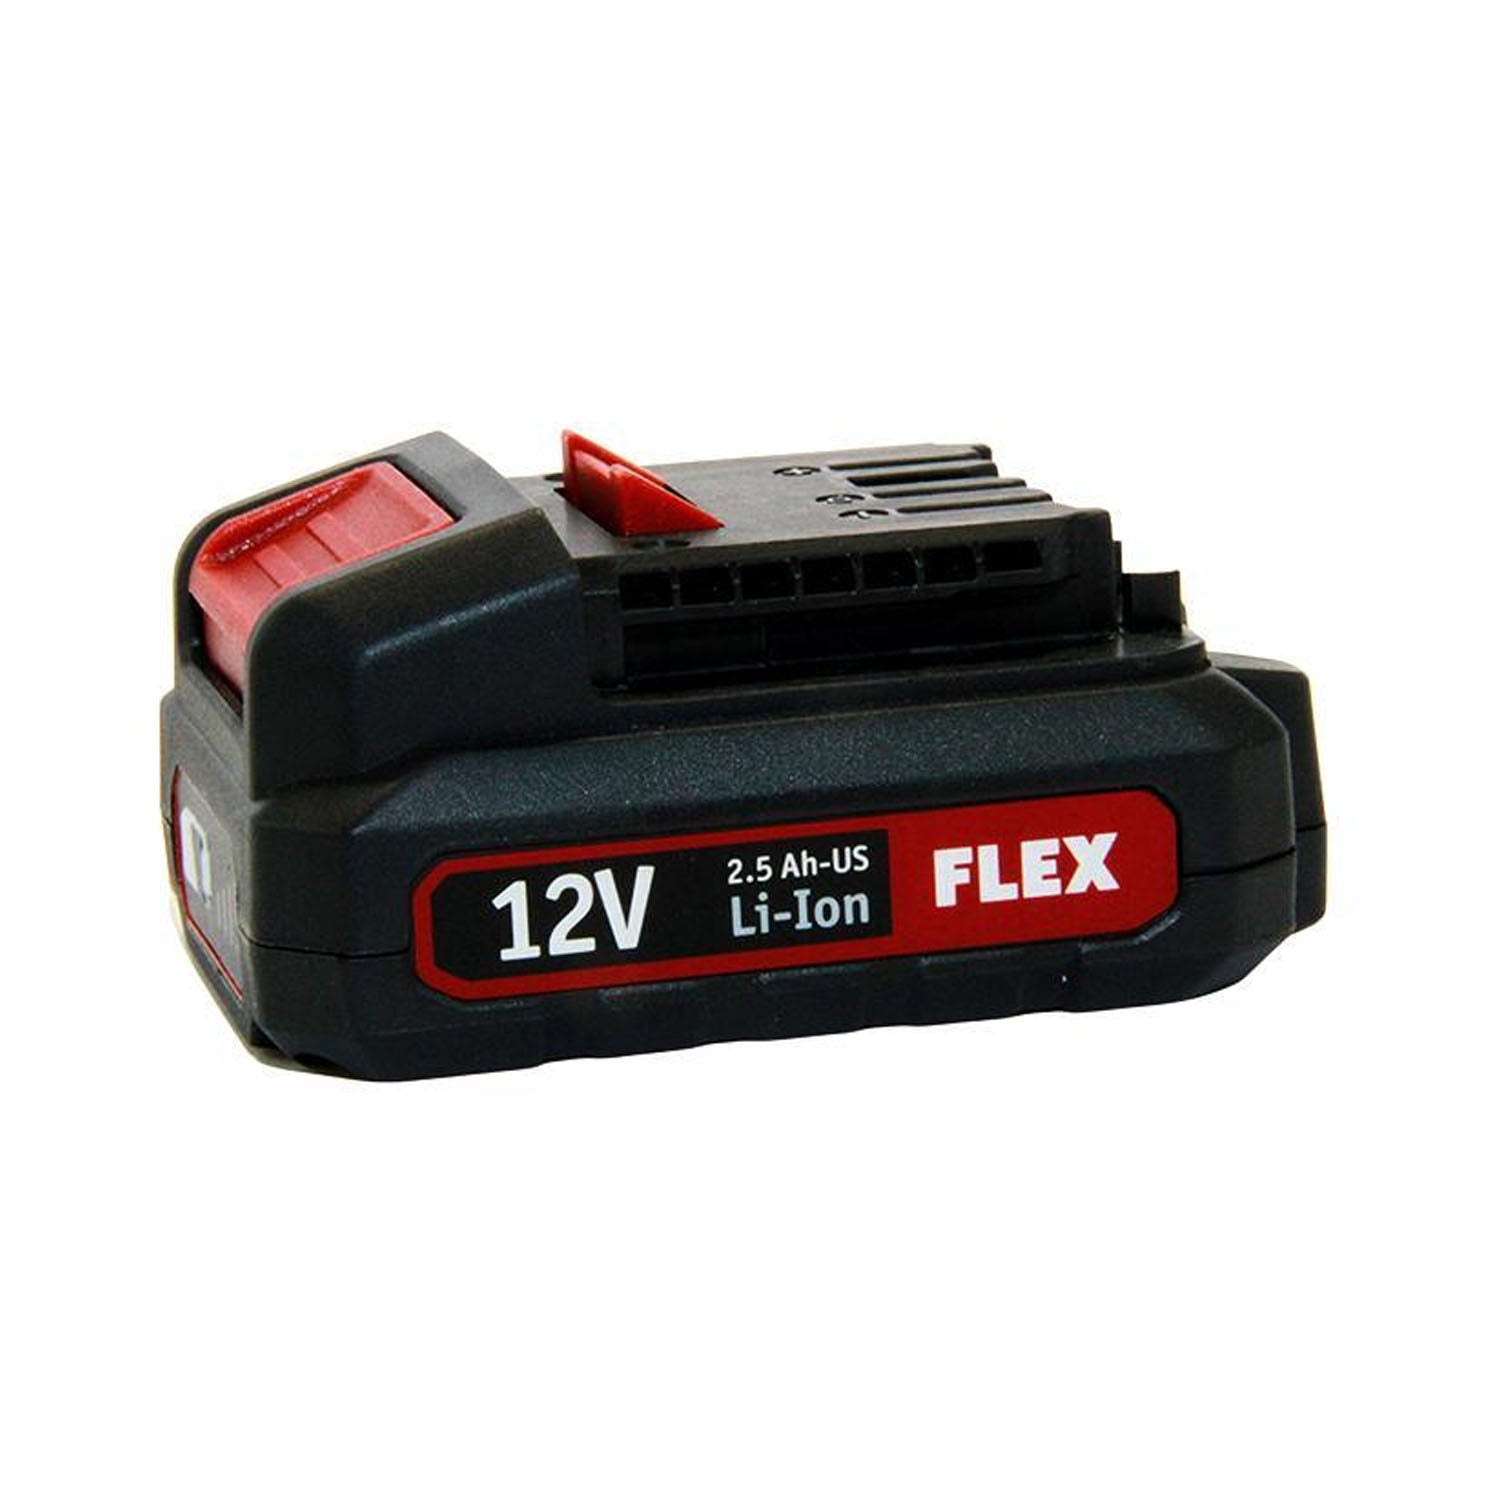 flex-tools-12-volt-rechargable-battery